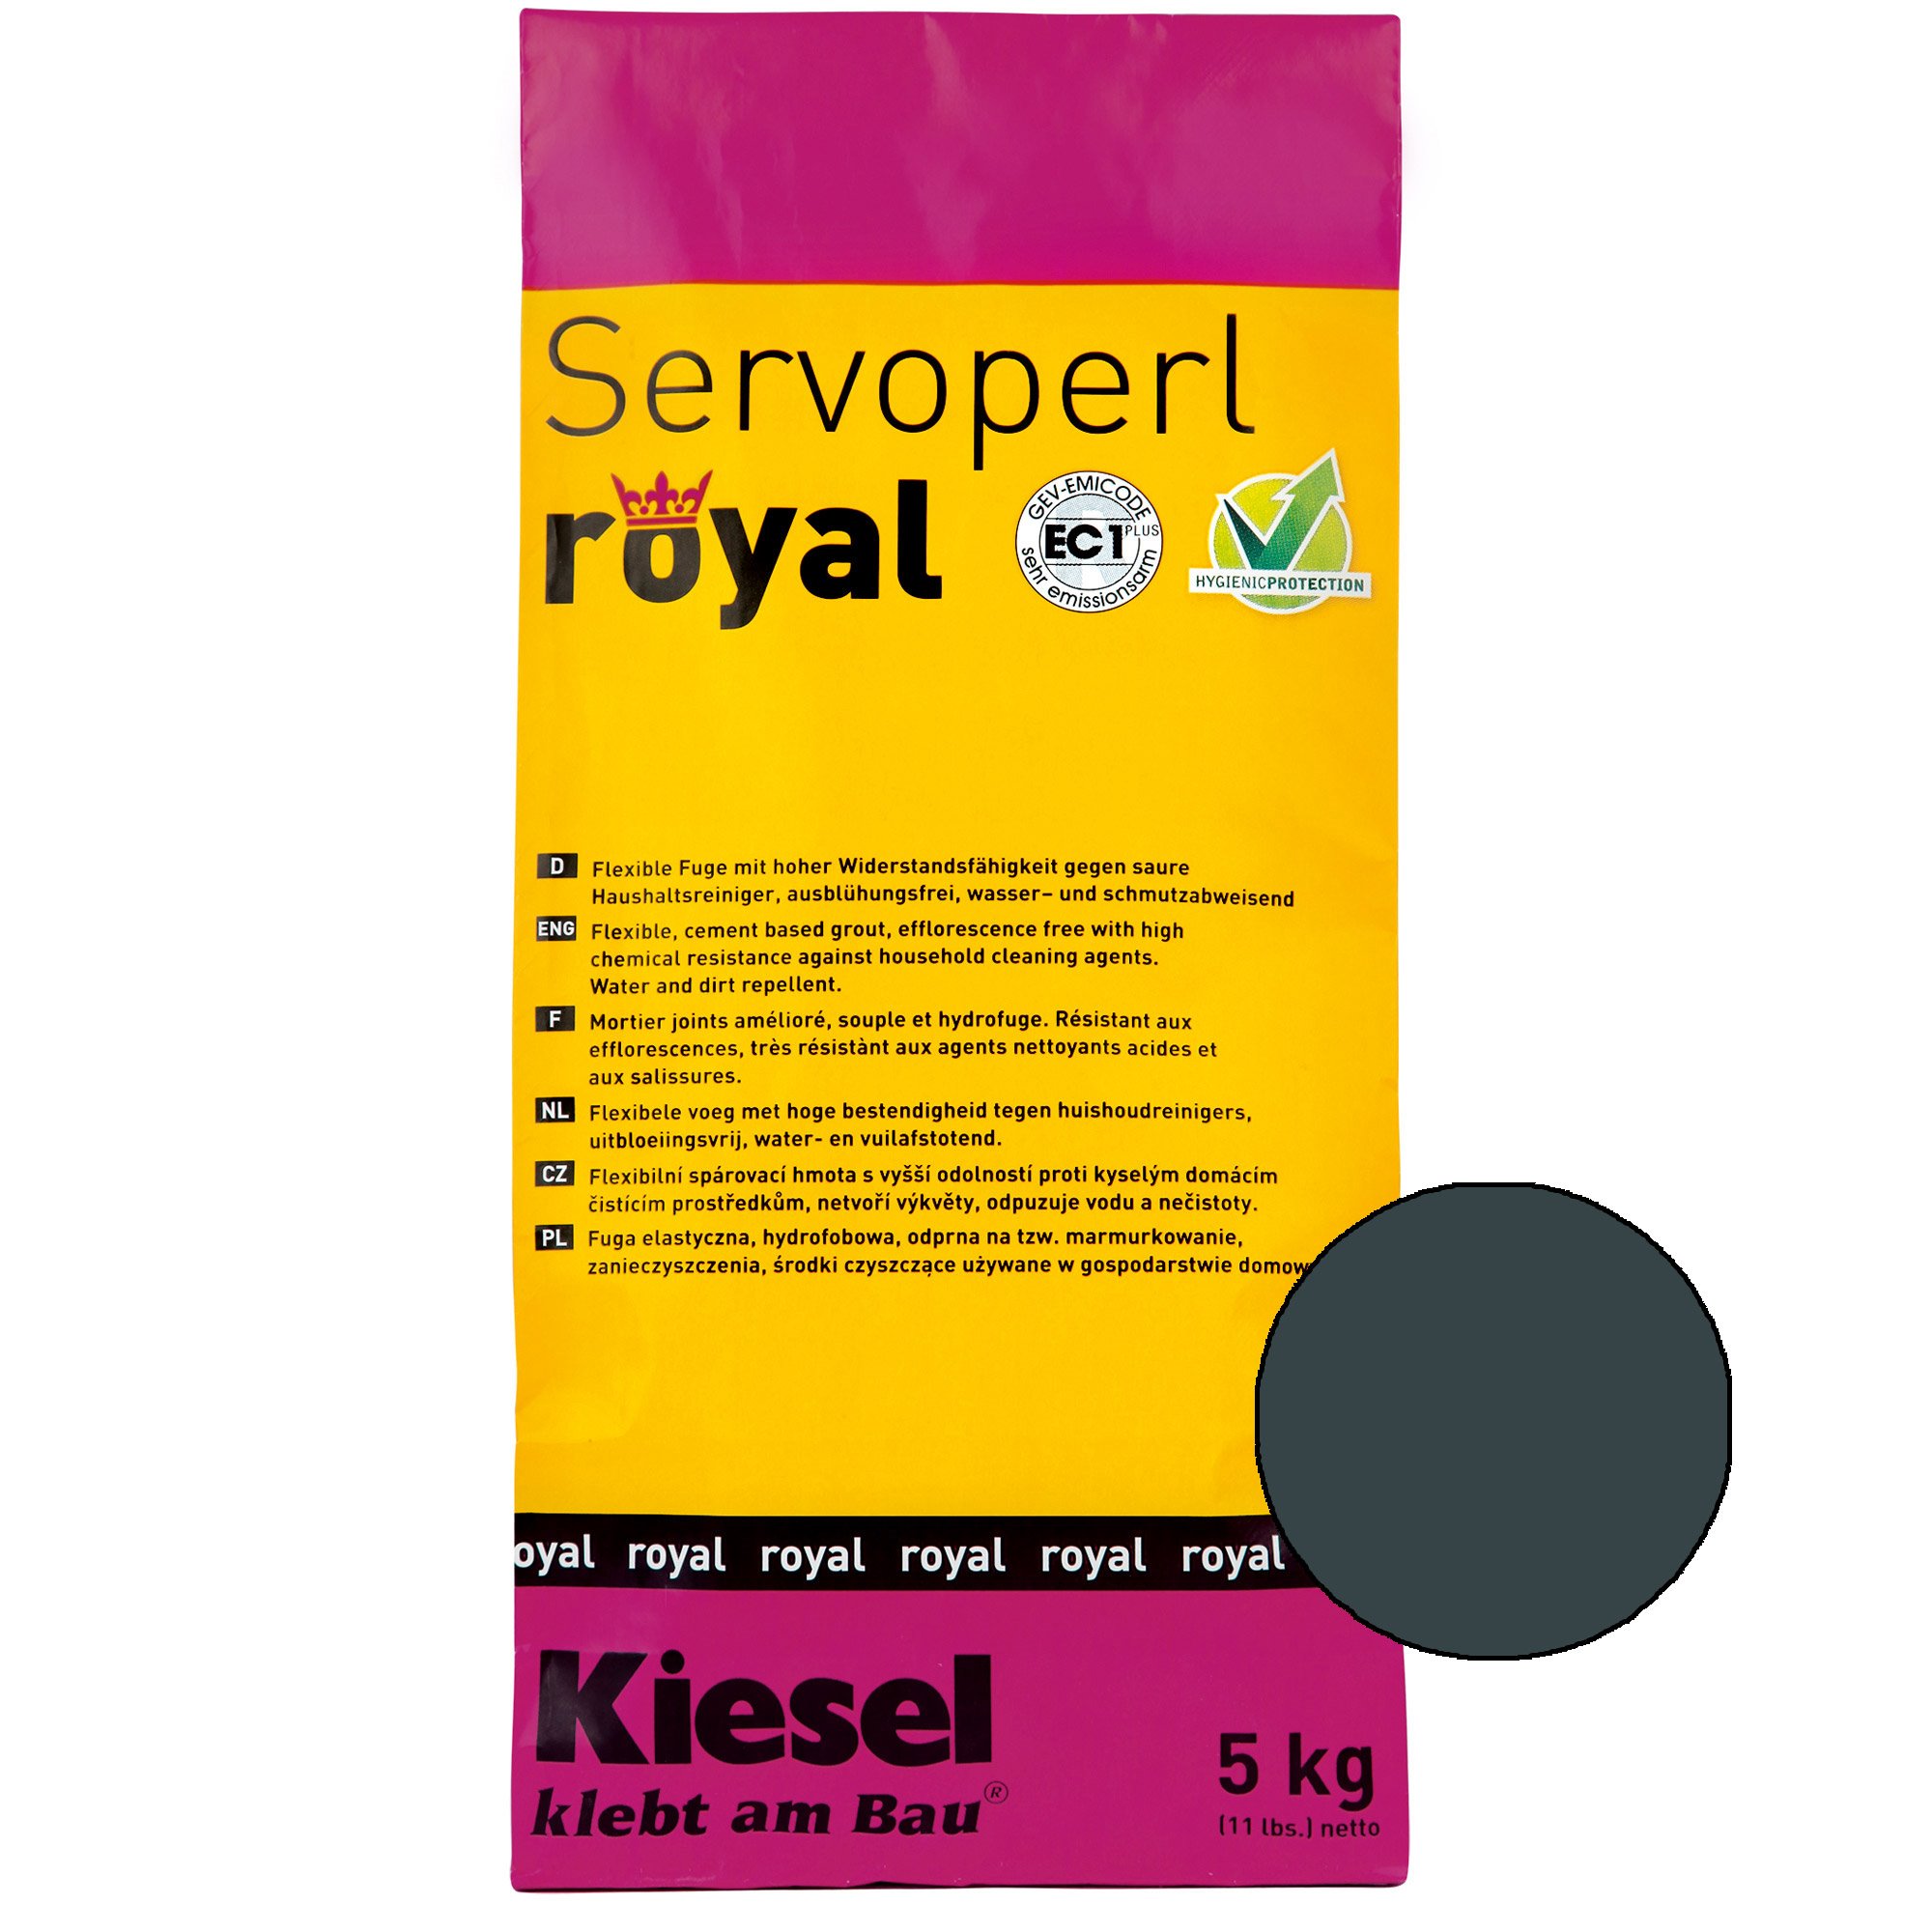 Kiesel Servoperl Royal - Flexibele, Water- En Vuilafstotende Voeg (5KG Desert Sand)